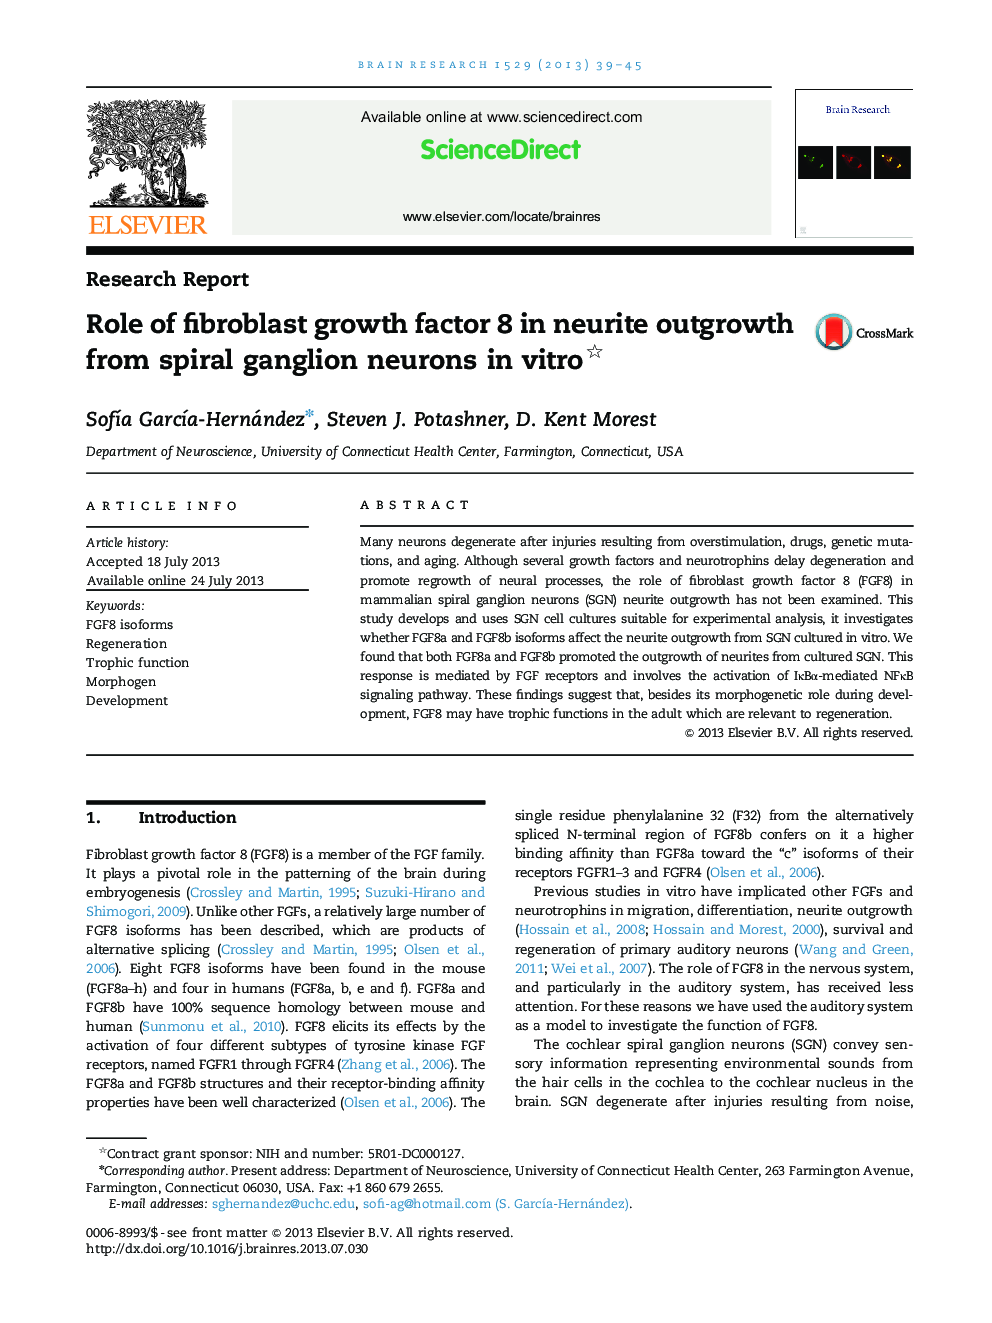 گزارش تحقیق: نقش فاکتور رشد فیبروبلاست 8 در رشد نوریت از نورون گانگلیون مارپیچ در محیط آزمایشگاهی 